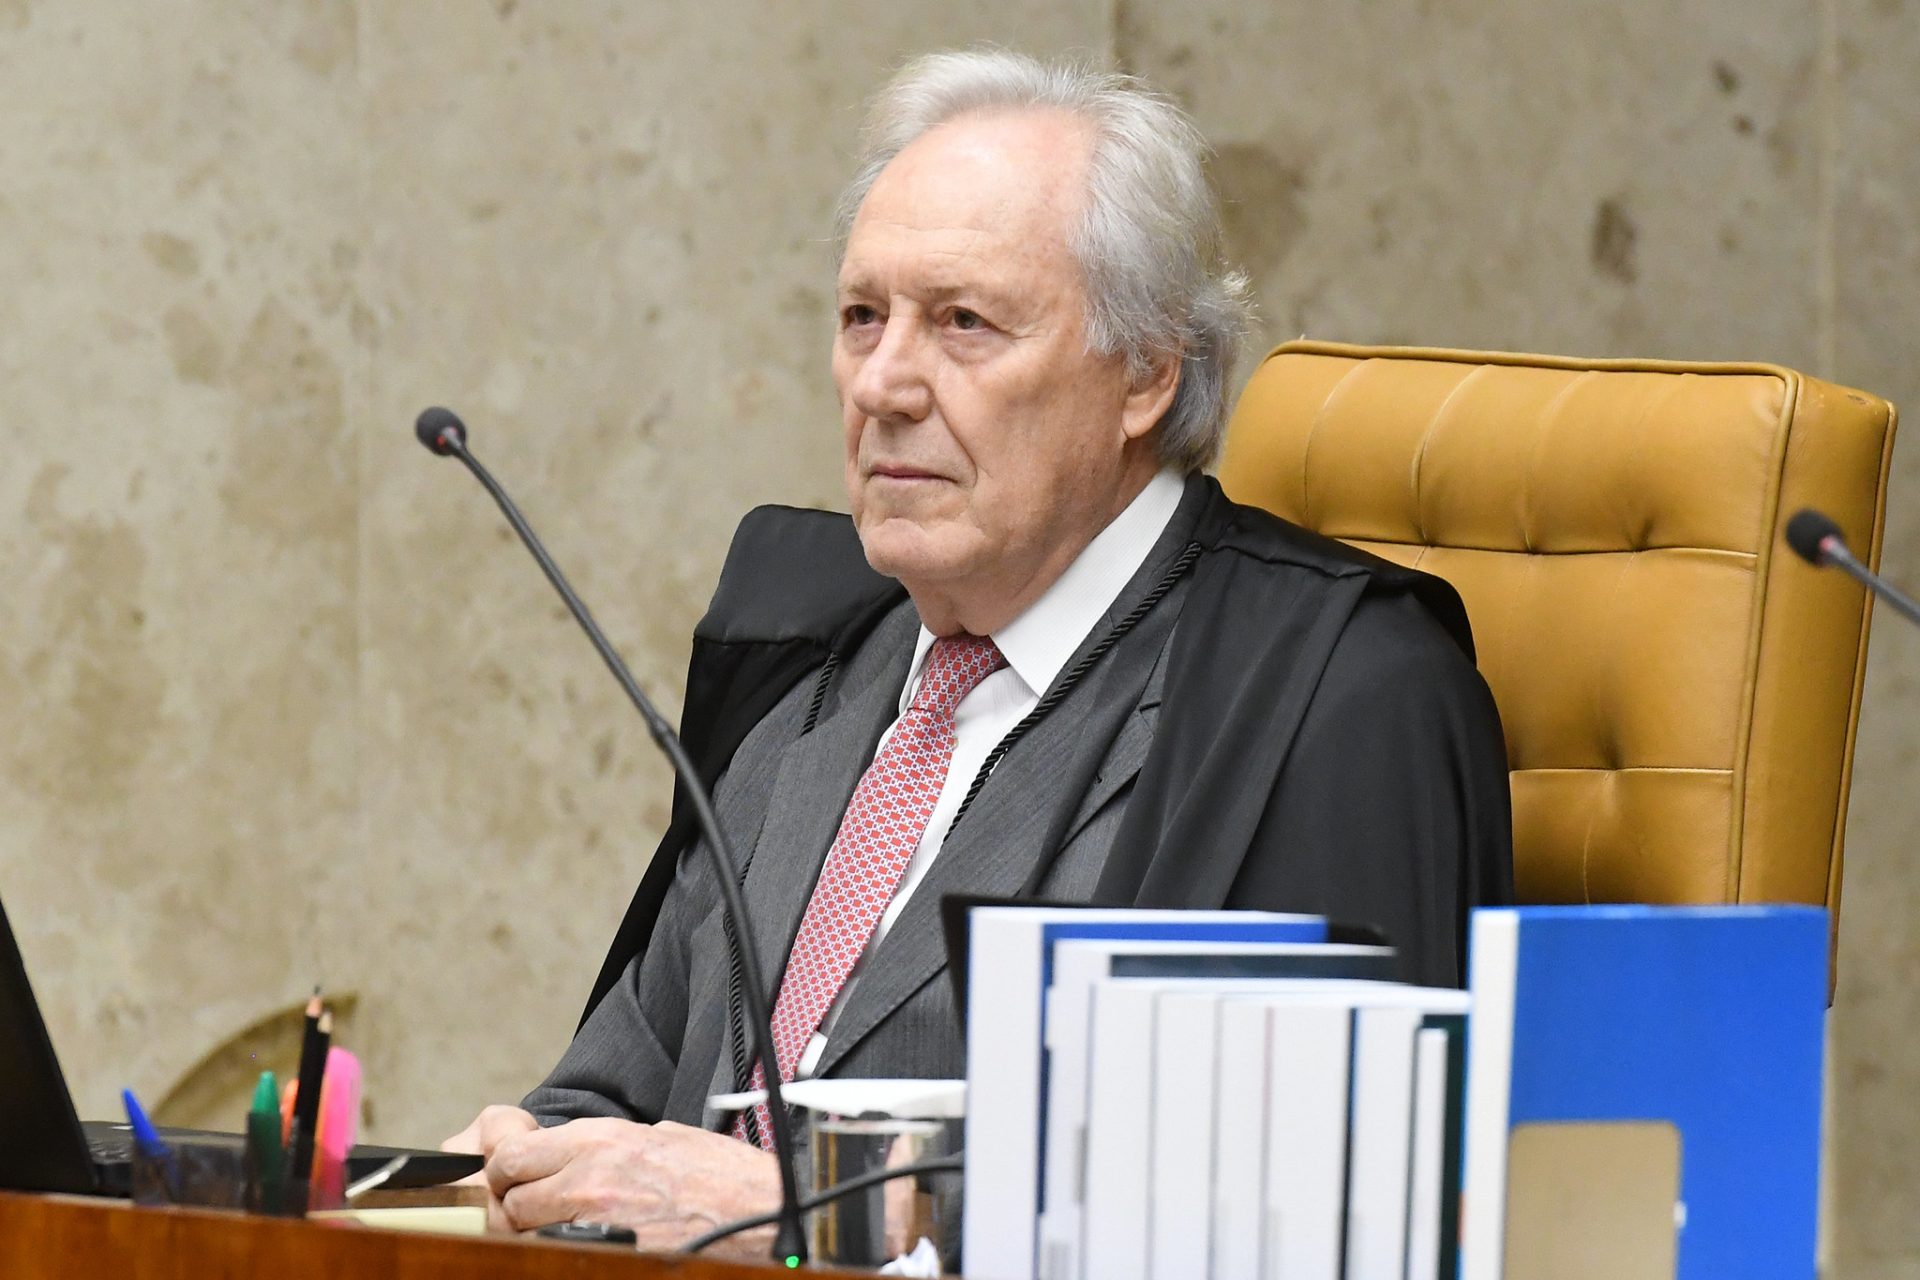 Ministro Ricardo Lewandowski durante a sessão plenária - Fotografia: Carlos Moura/SCO/STF